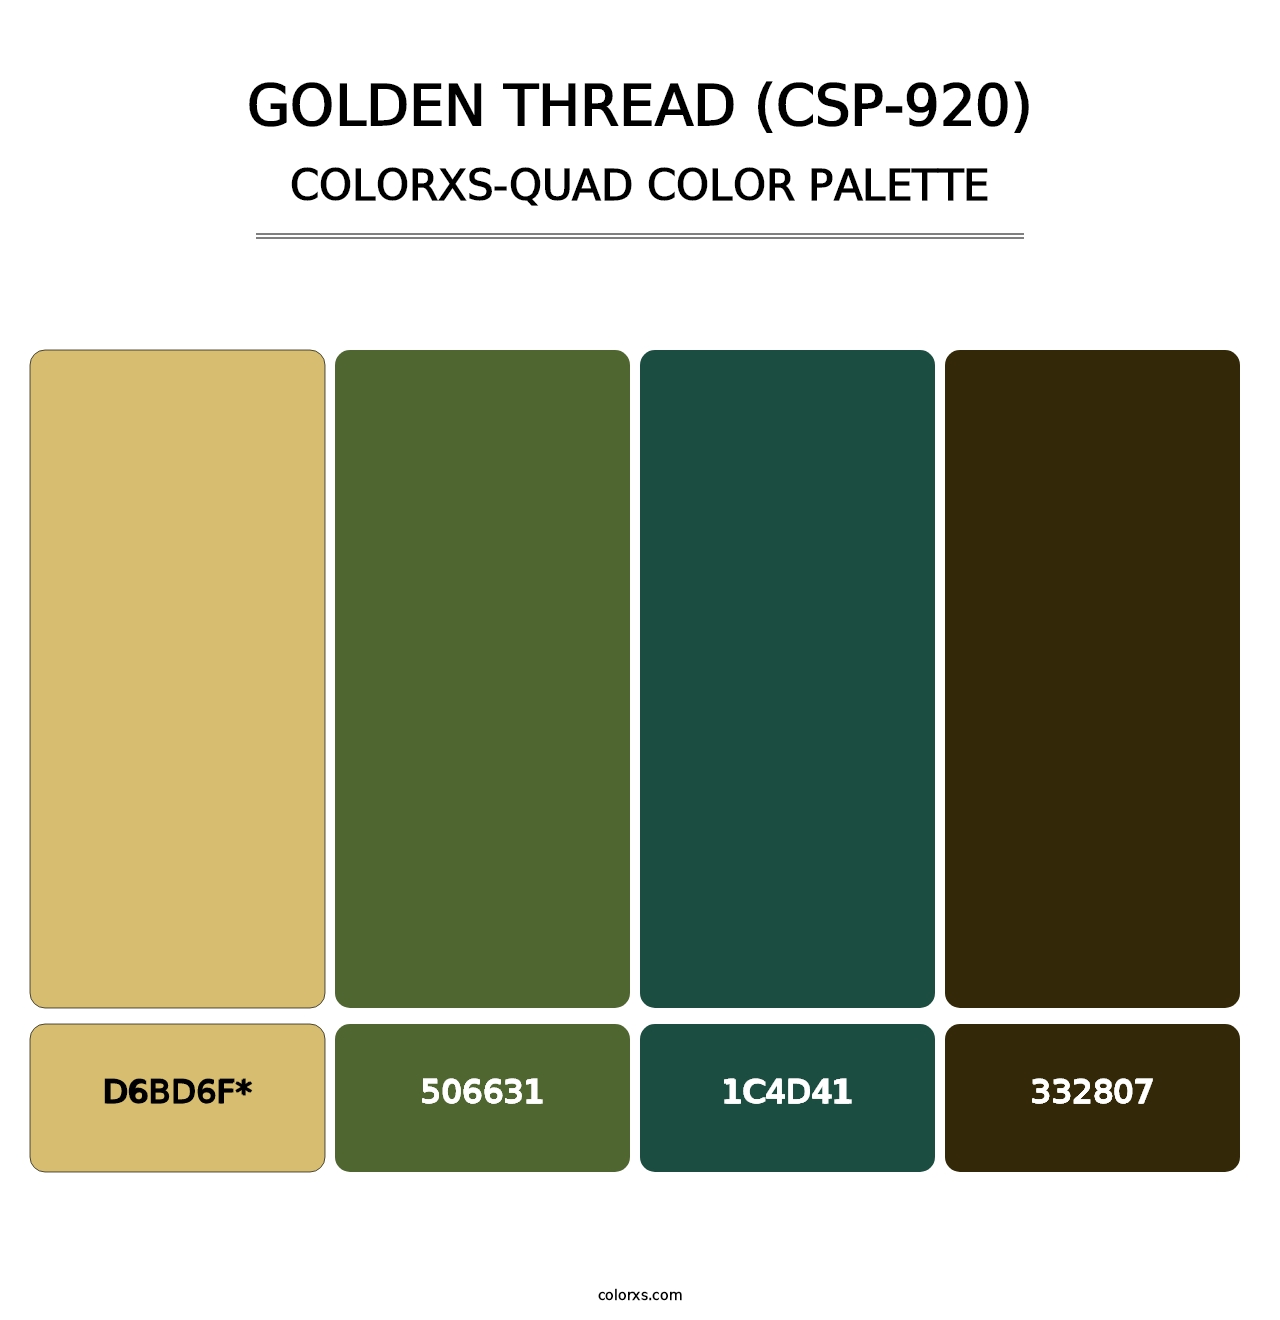 Golden Thread (CSP-920) - Colorxs Quad Palette